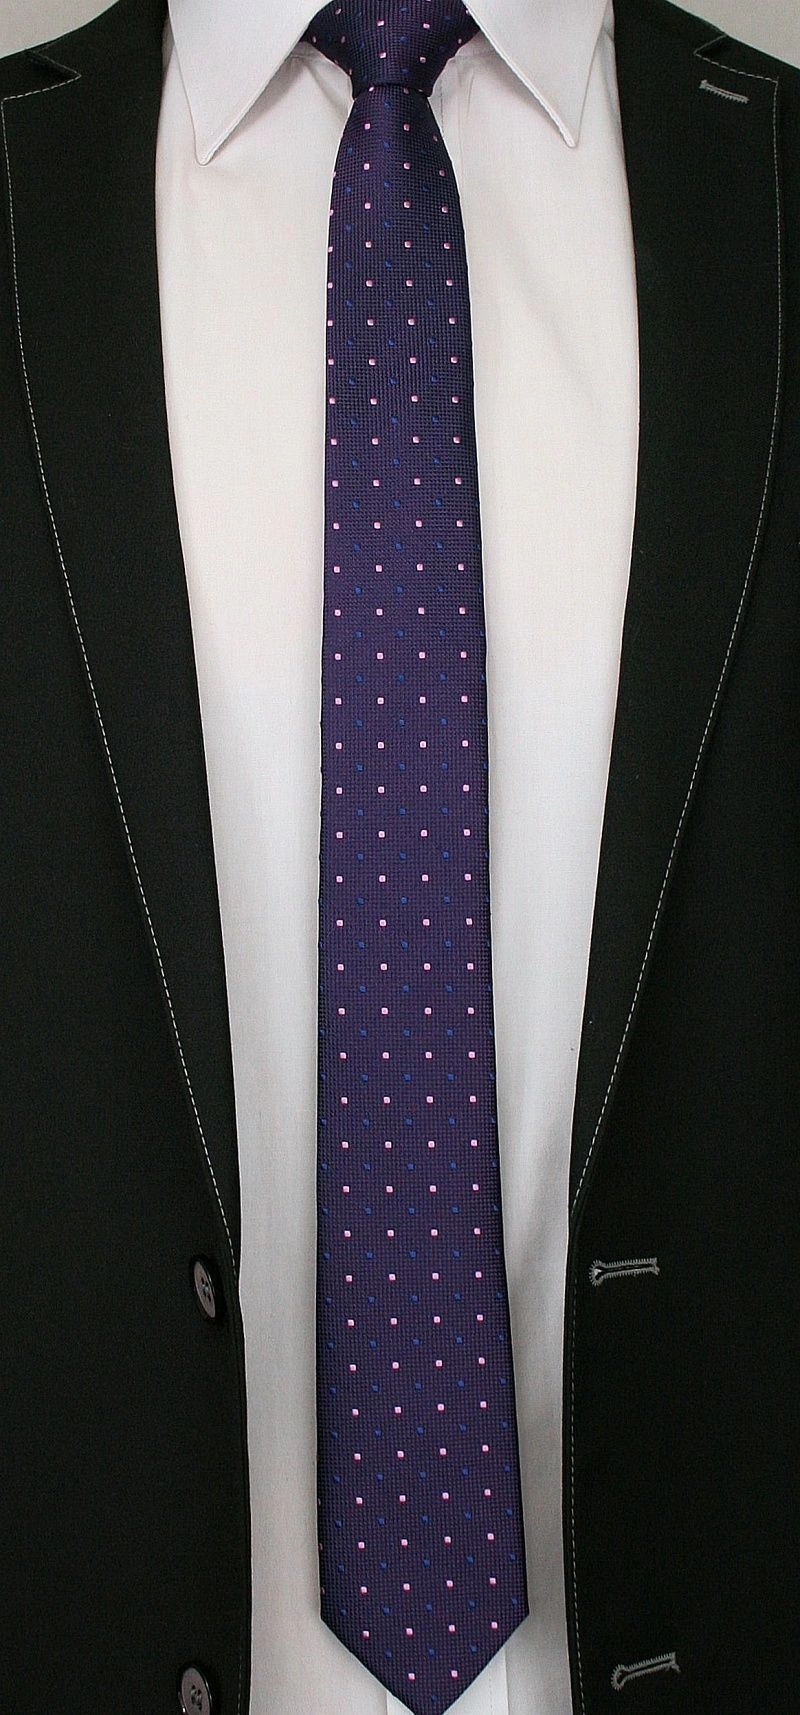 Fioletowy Elegancki Krawat Męski -ALTIES- 6 cm, w Niebiesko-Różowe Kropki